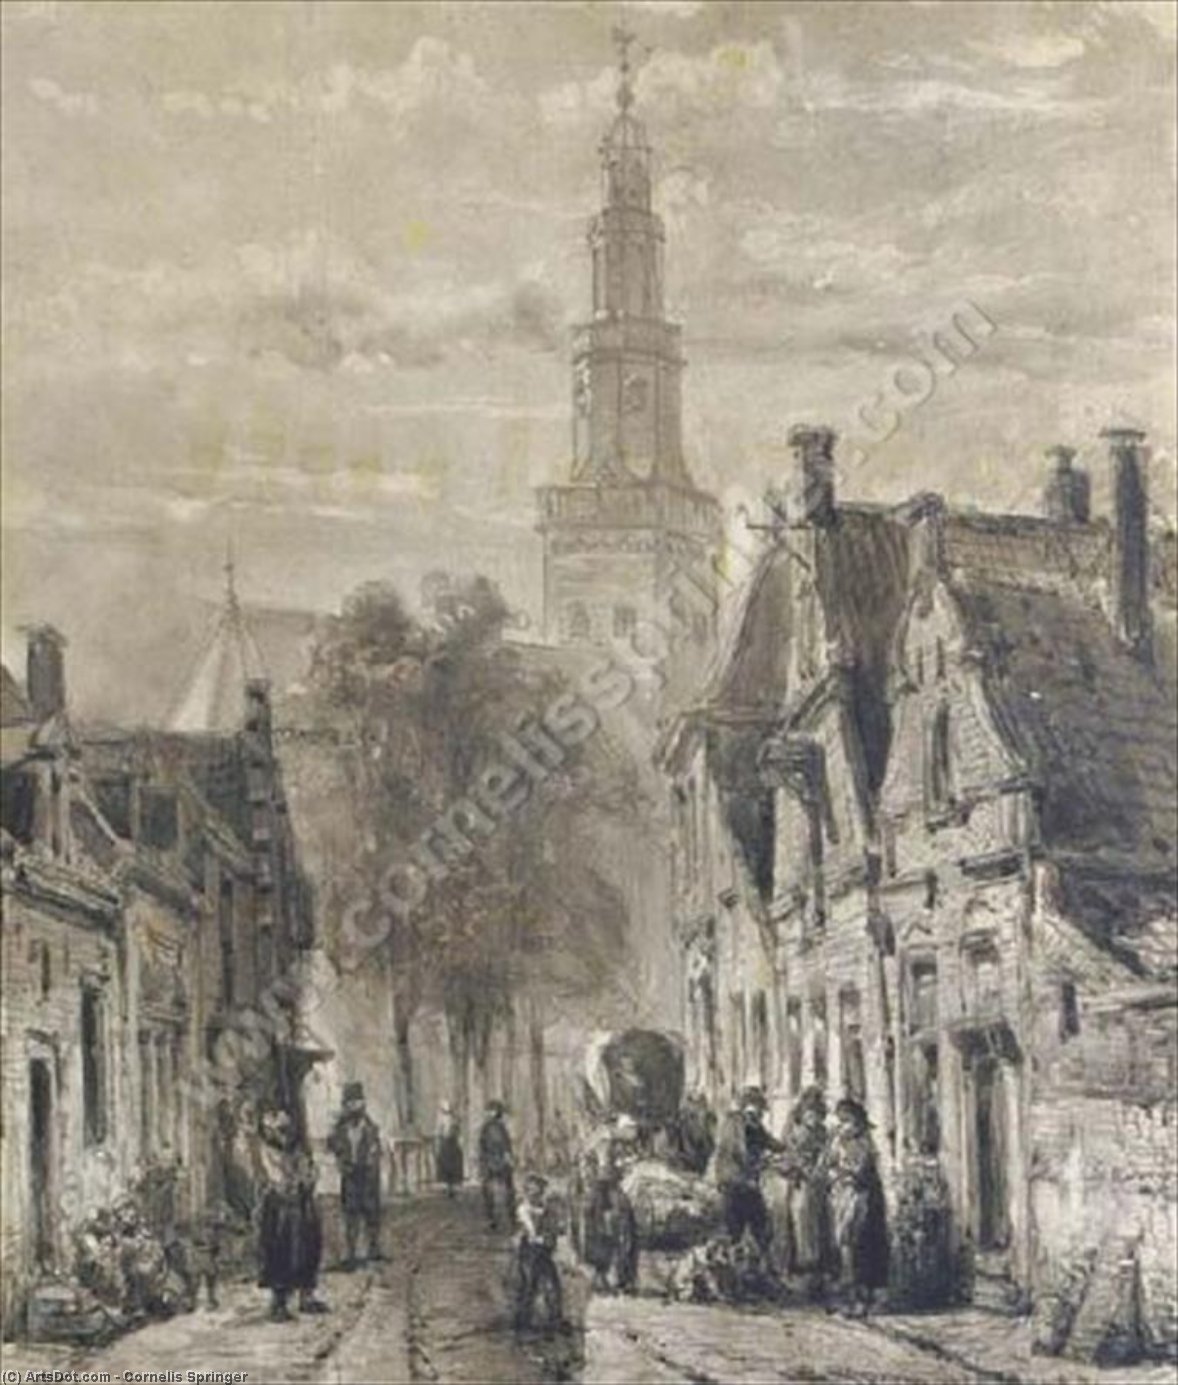 WikiOO.org - Encyclopedia of Fine Arts - Målning, konstverk Cornelis Springer - Hinloopen. Activities in the Dutch town of Hindelopen